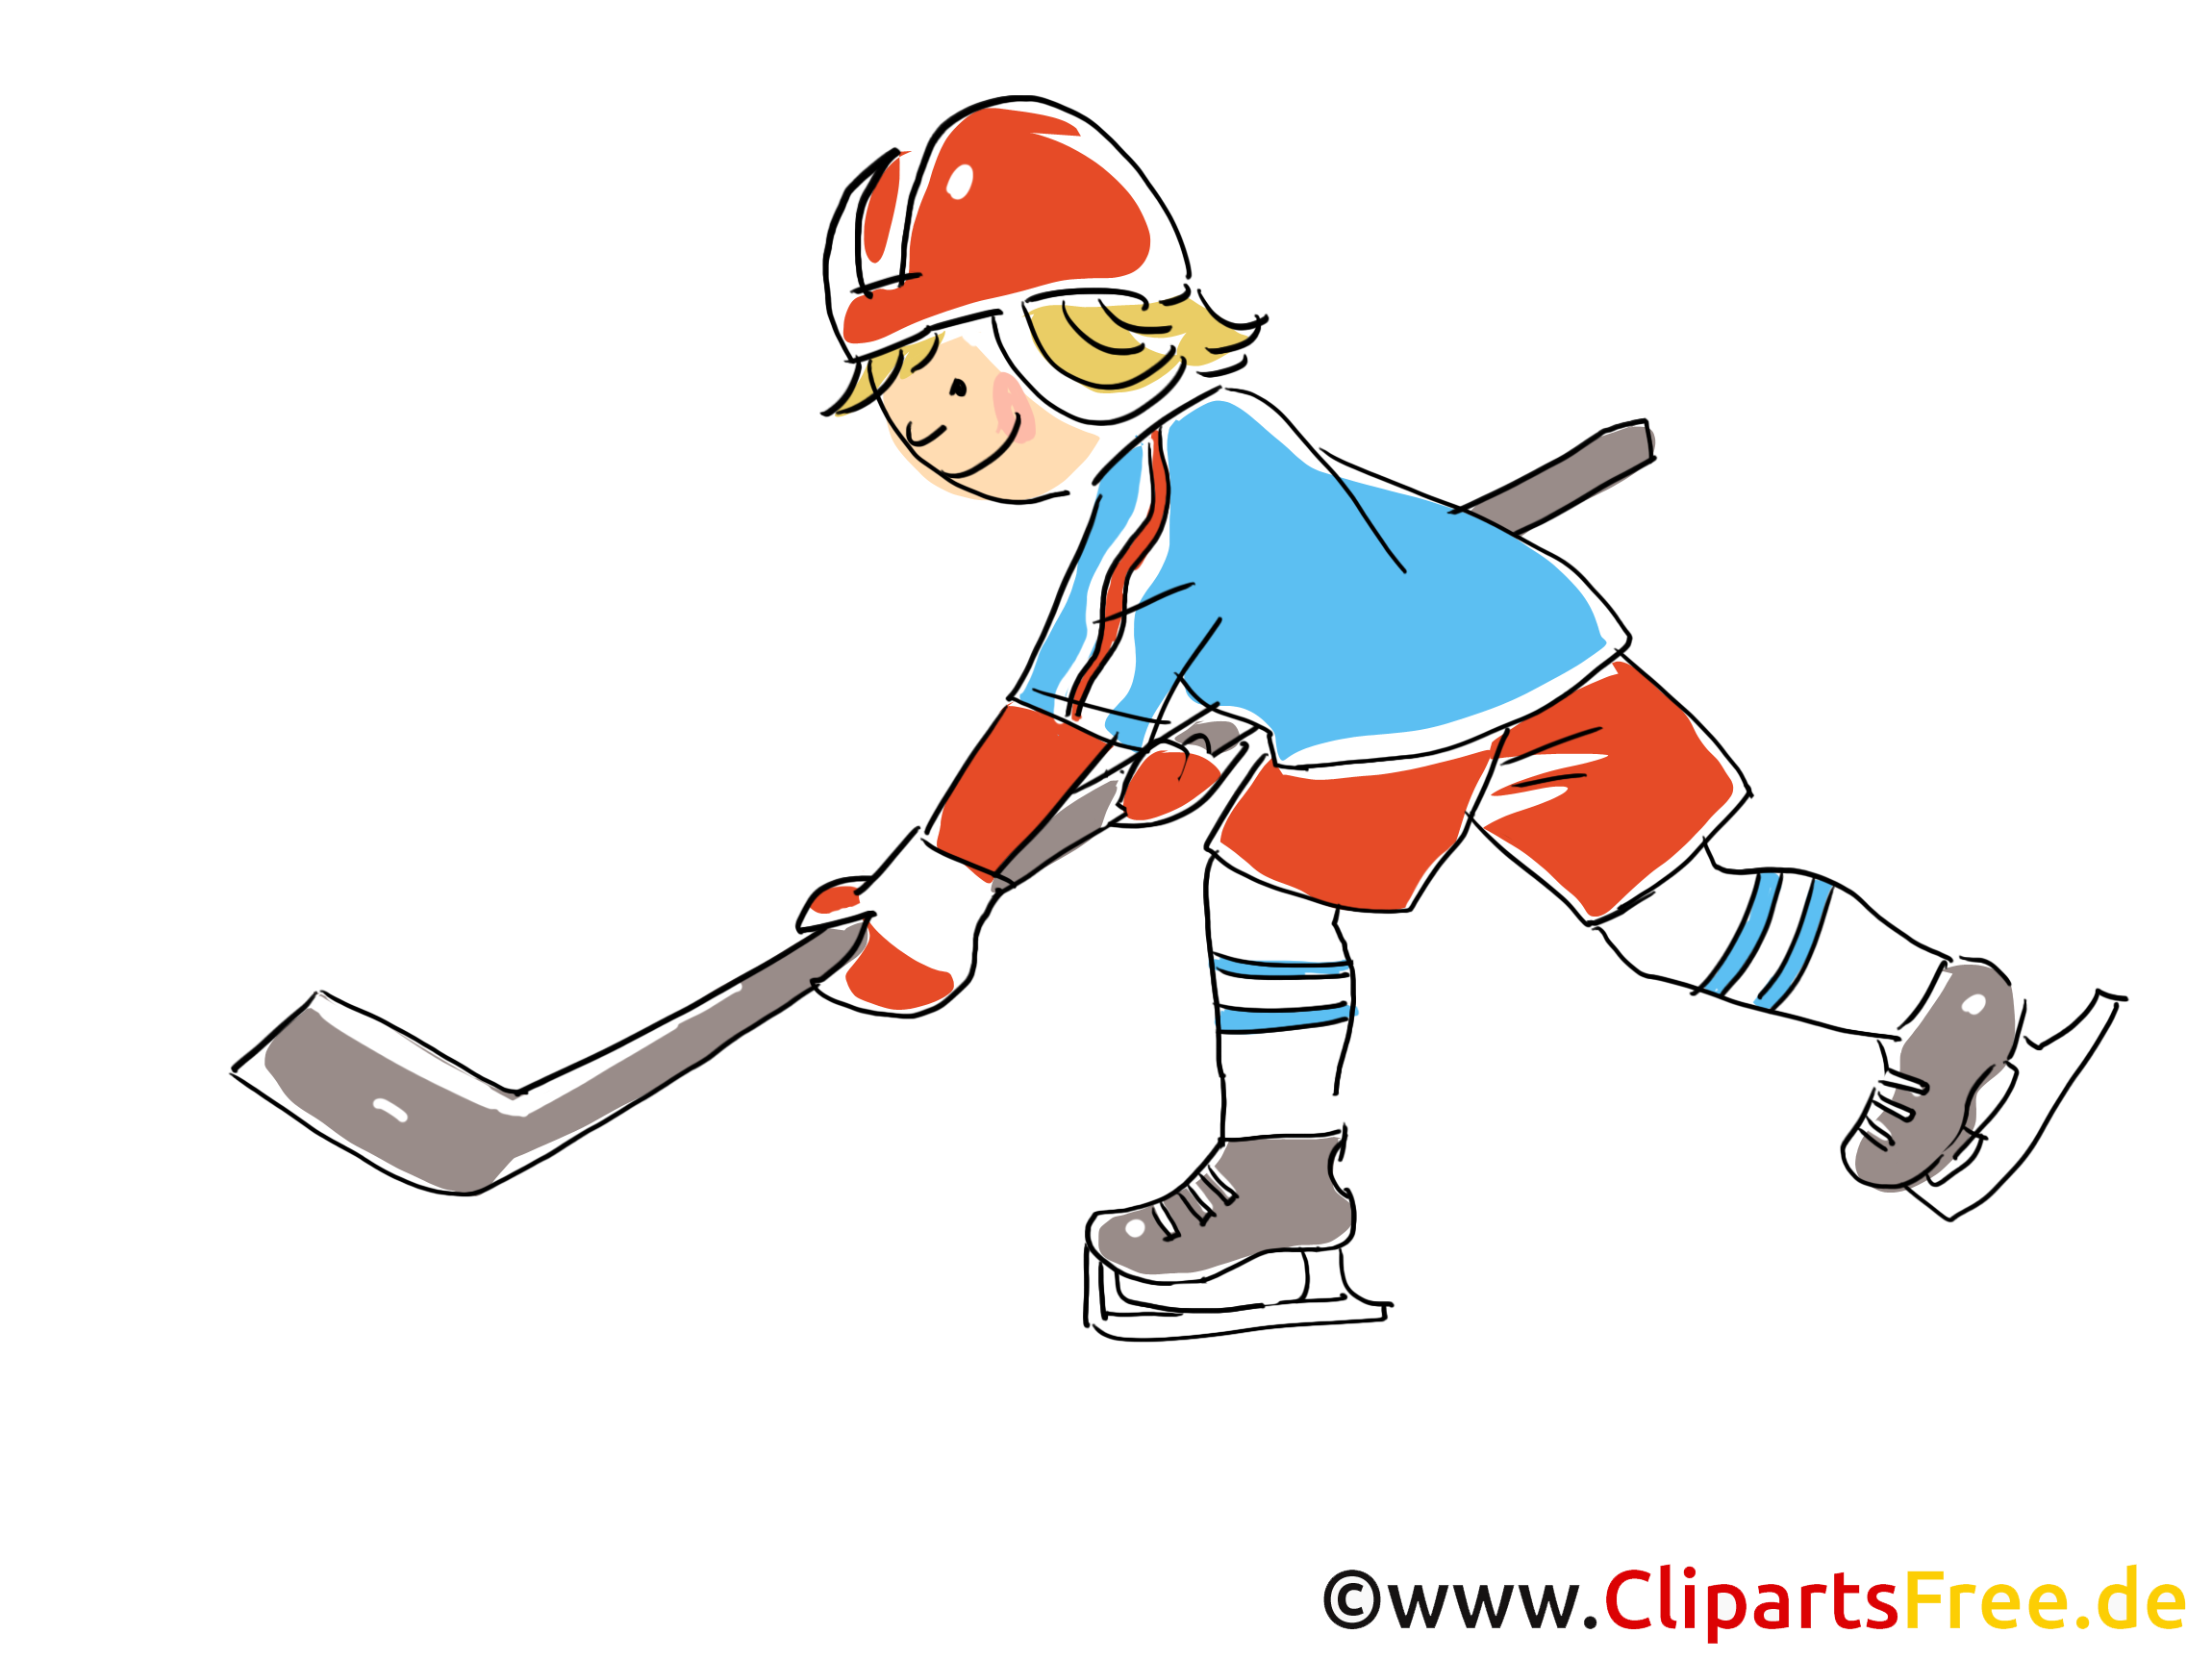 Clip art gratuit cross - Hockey dessin